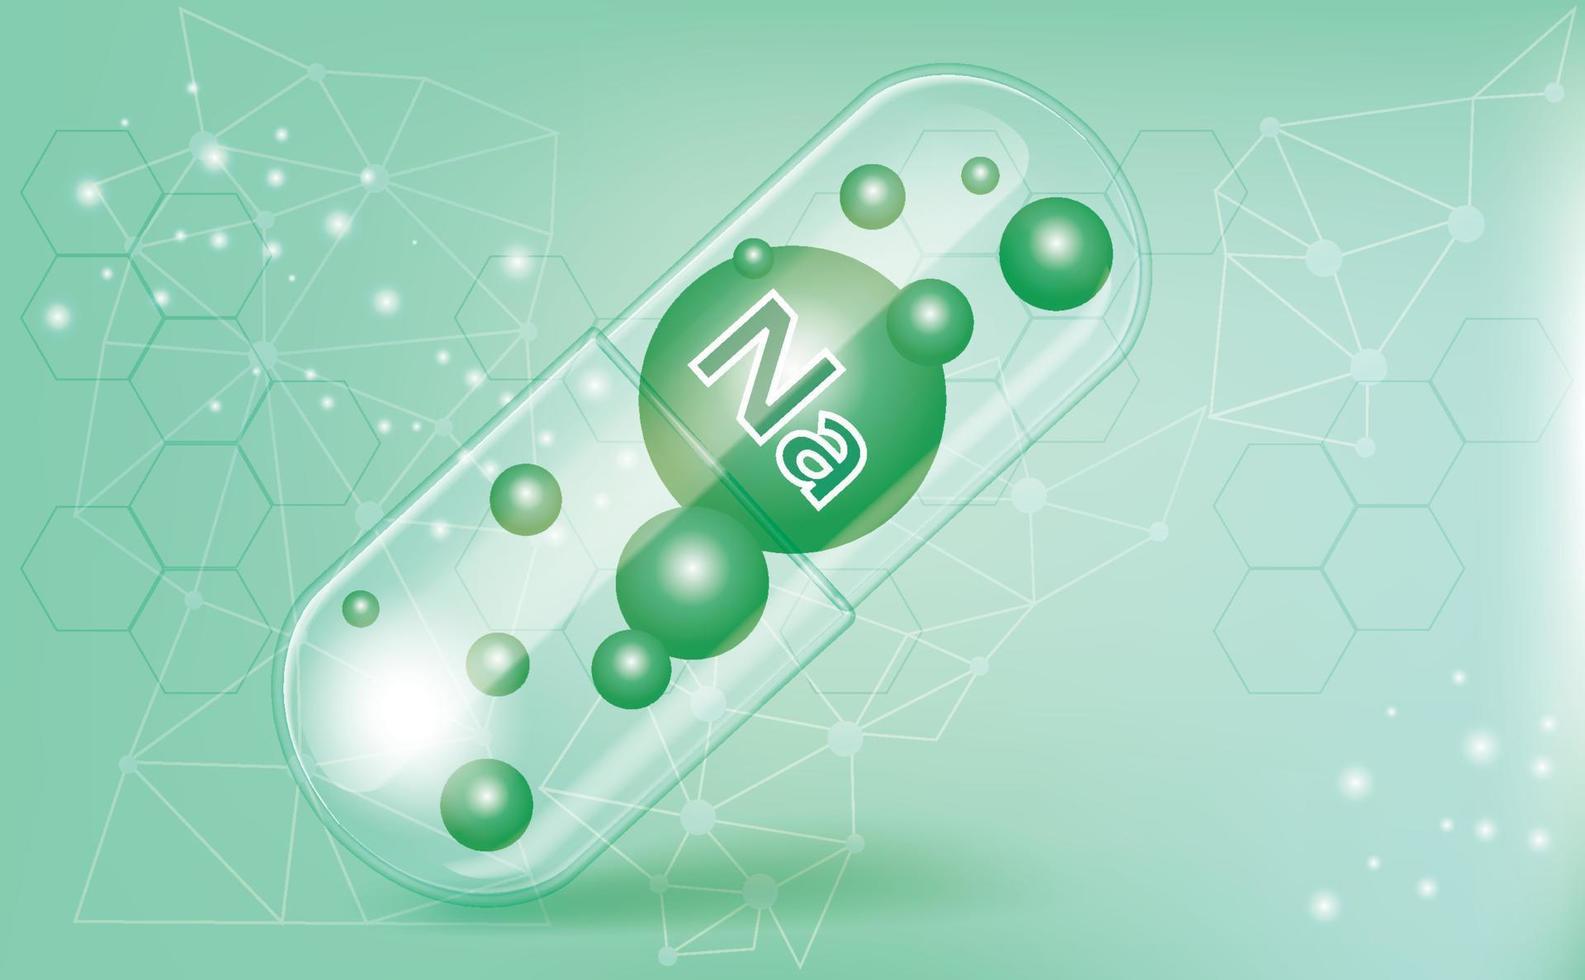 minerali na, natrium, vitamina all'interno di una capsula traslucida, macronutriente, integratore alimentare su sfondo verde sfumato, poster con informazioni mediche. illustrazione vettoriale